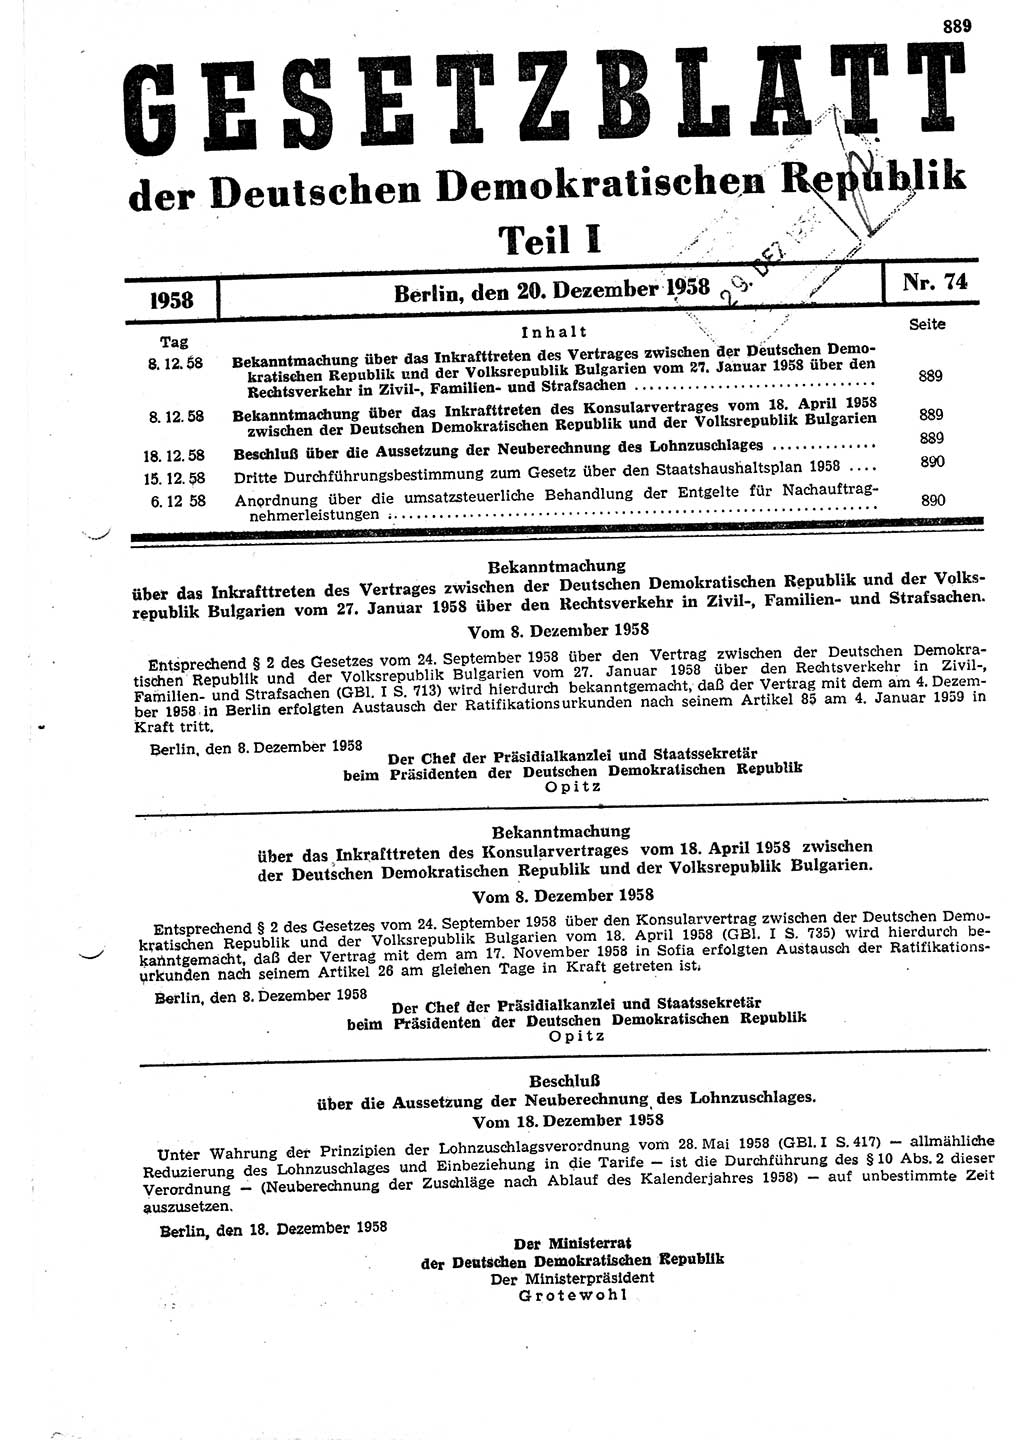 Gesetzblatt (GBl.) der Deutschen Demokratischen Republik (DDR) Teil Ⅰ 1958, Seite 889 (GBl. DDR Ⅰ 1958, S. 889)